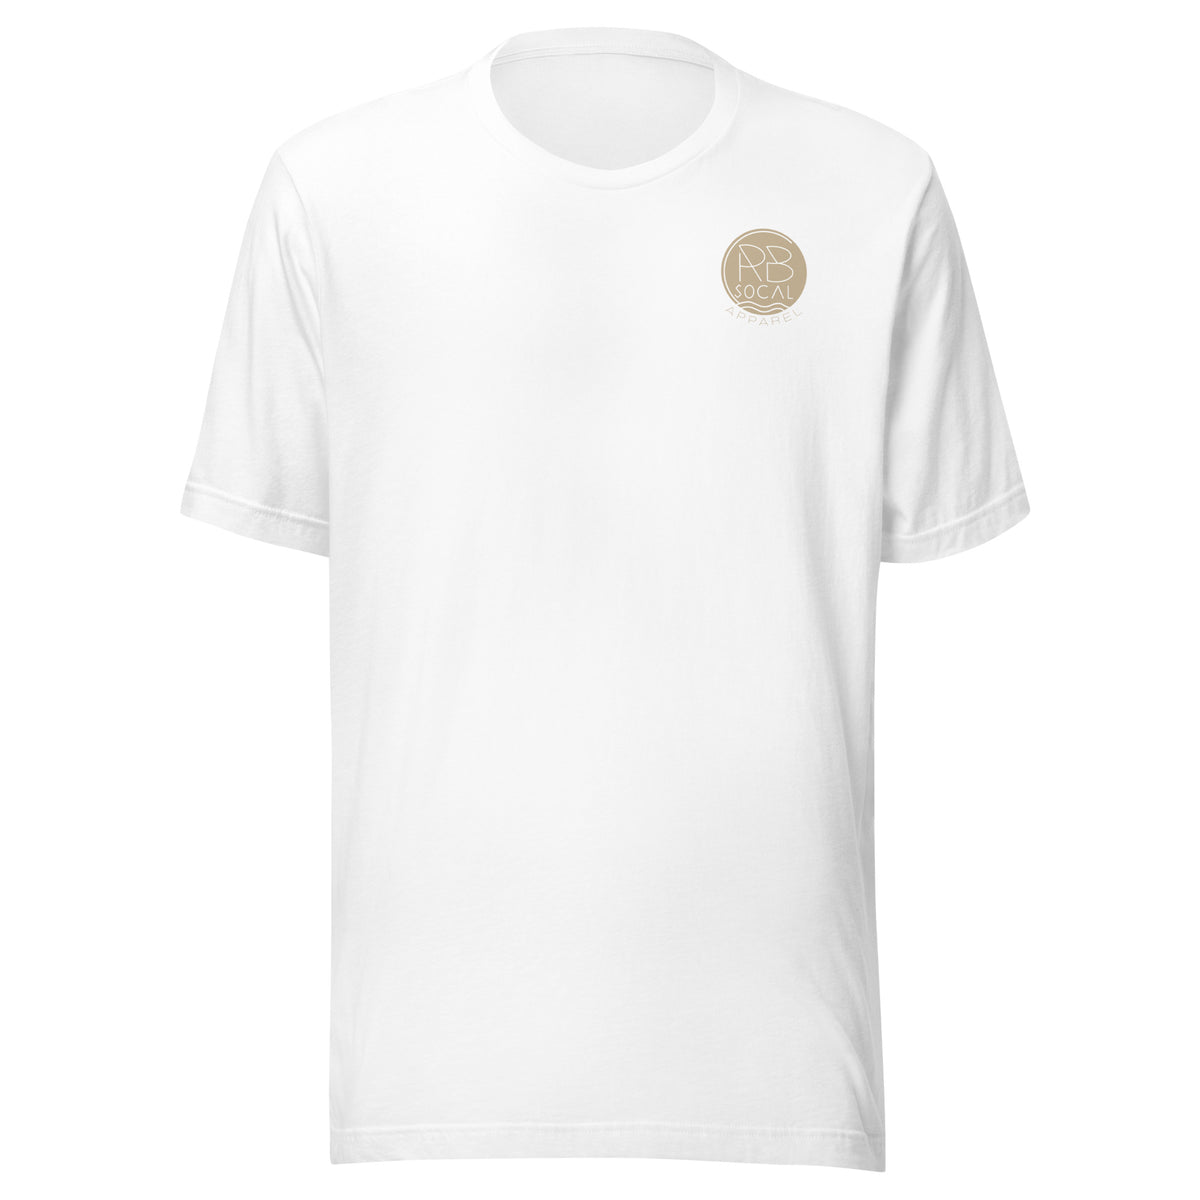 RB SoCal Beach t-shirt